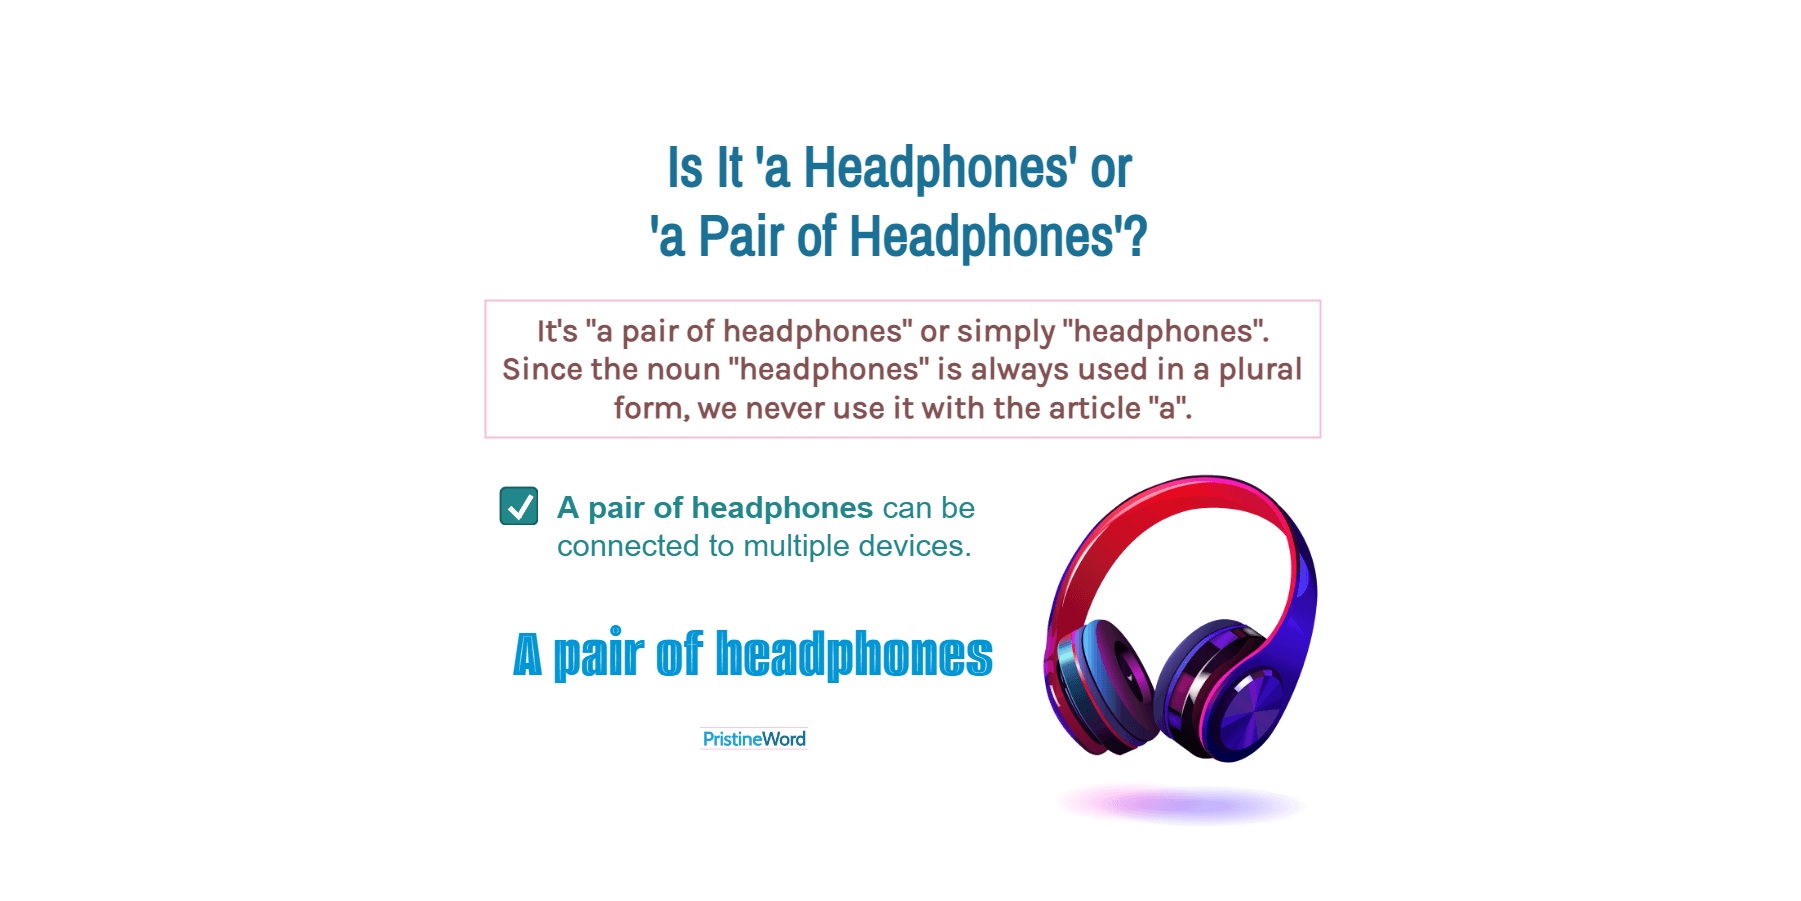 Is It 'a Headphones' or 'a Pair of Headphones'?